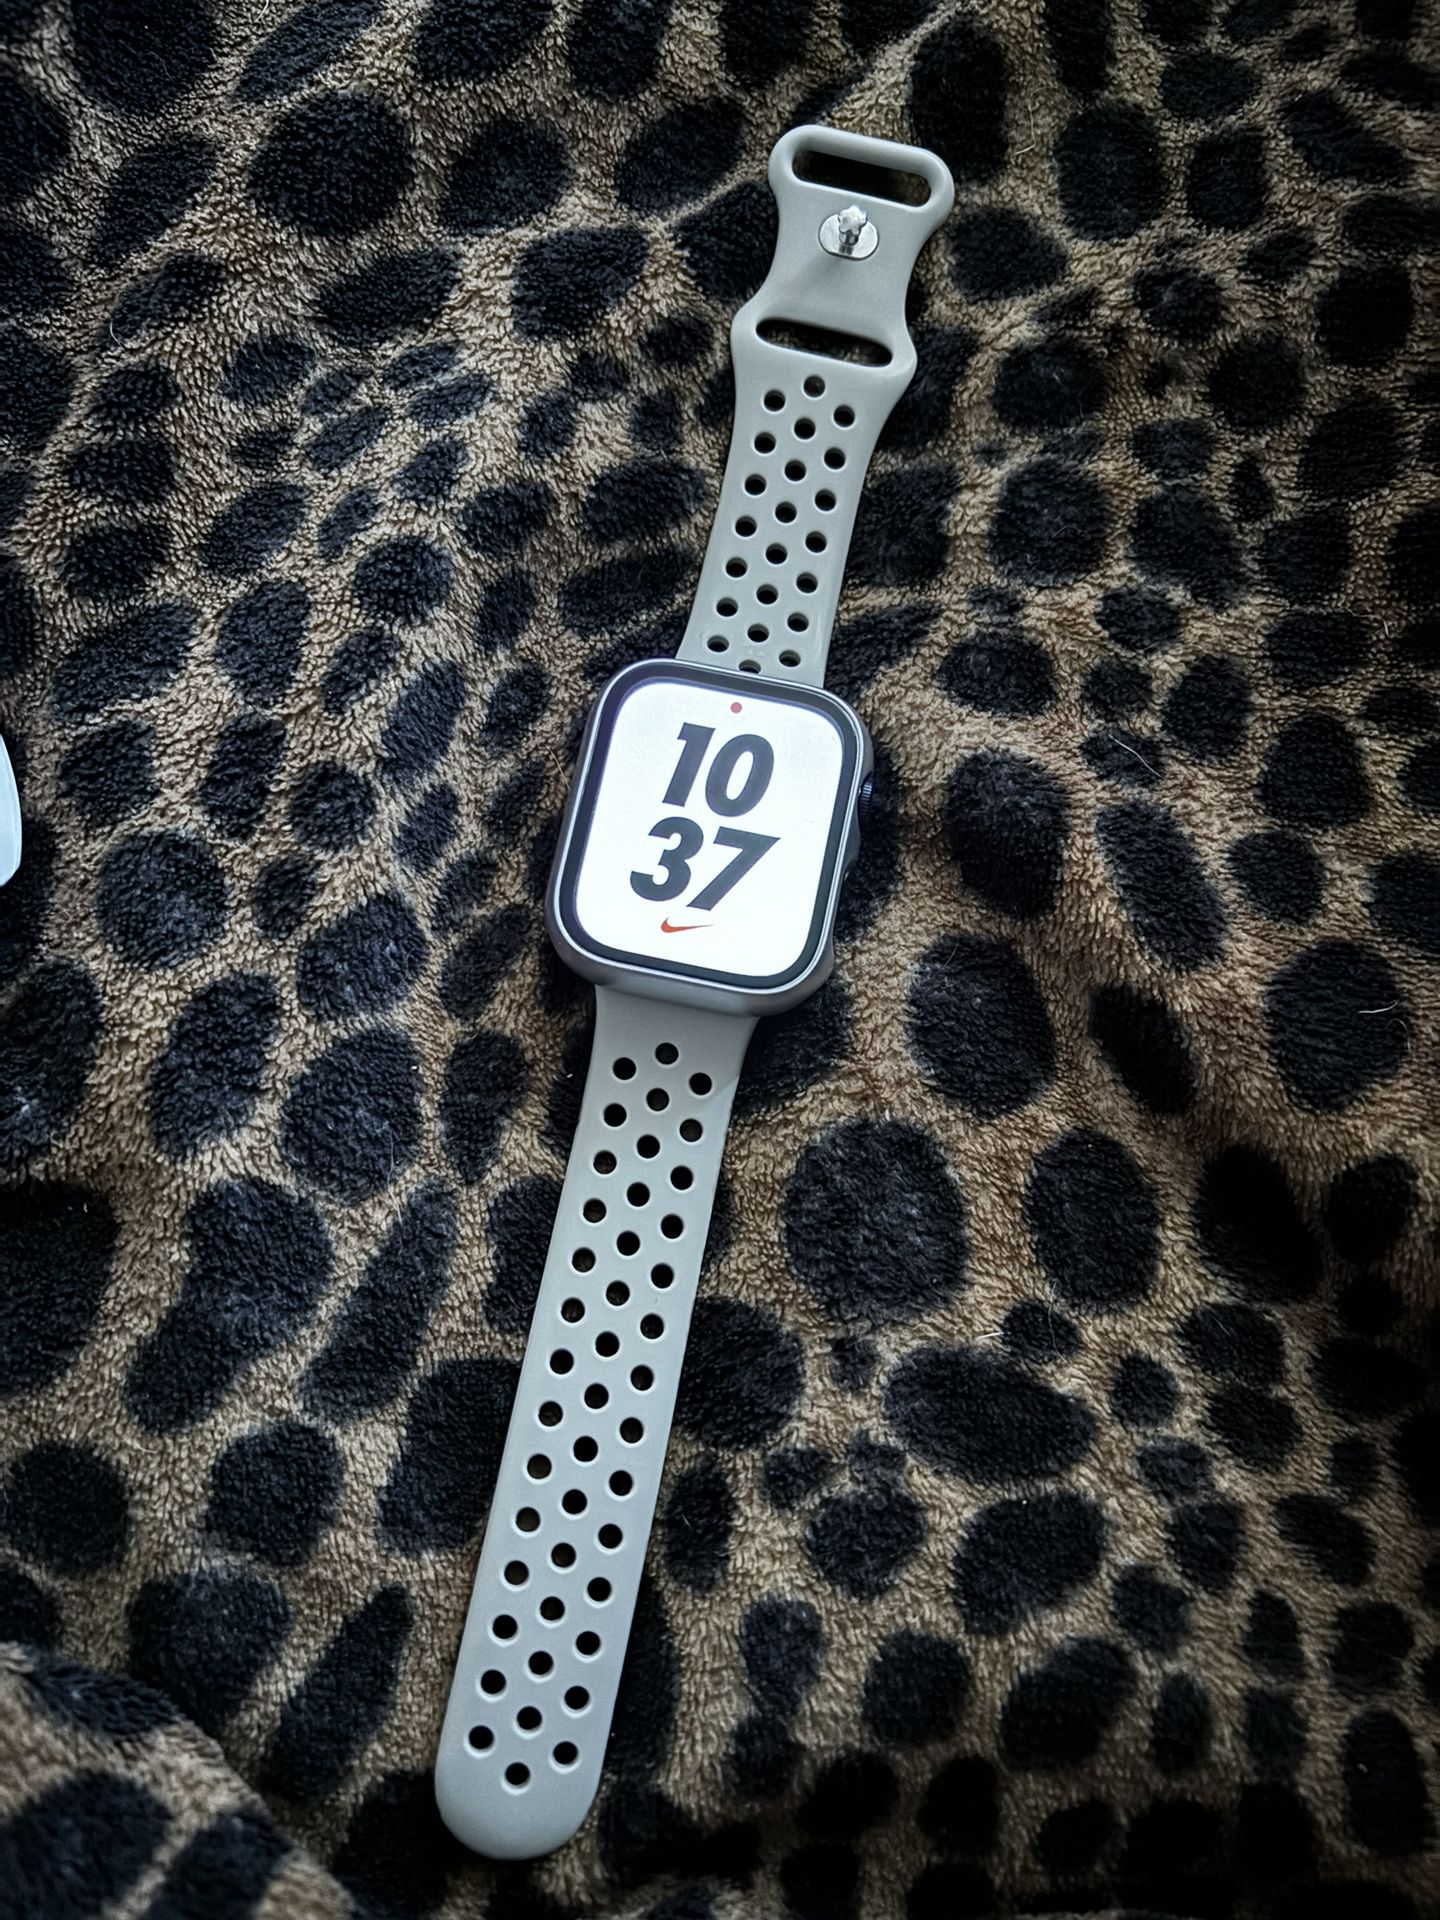 45 Mm Series 7 Nike Apple Watch